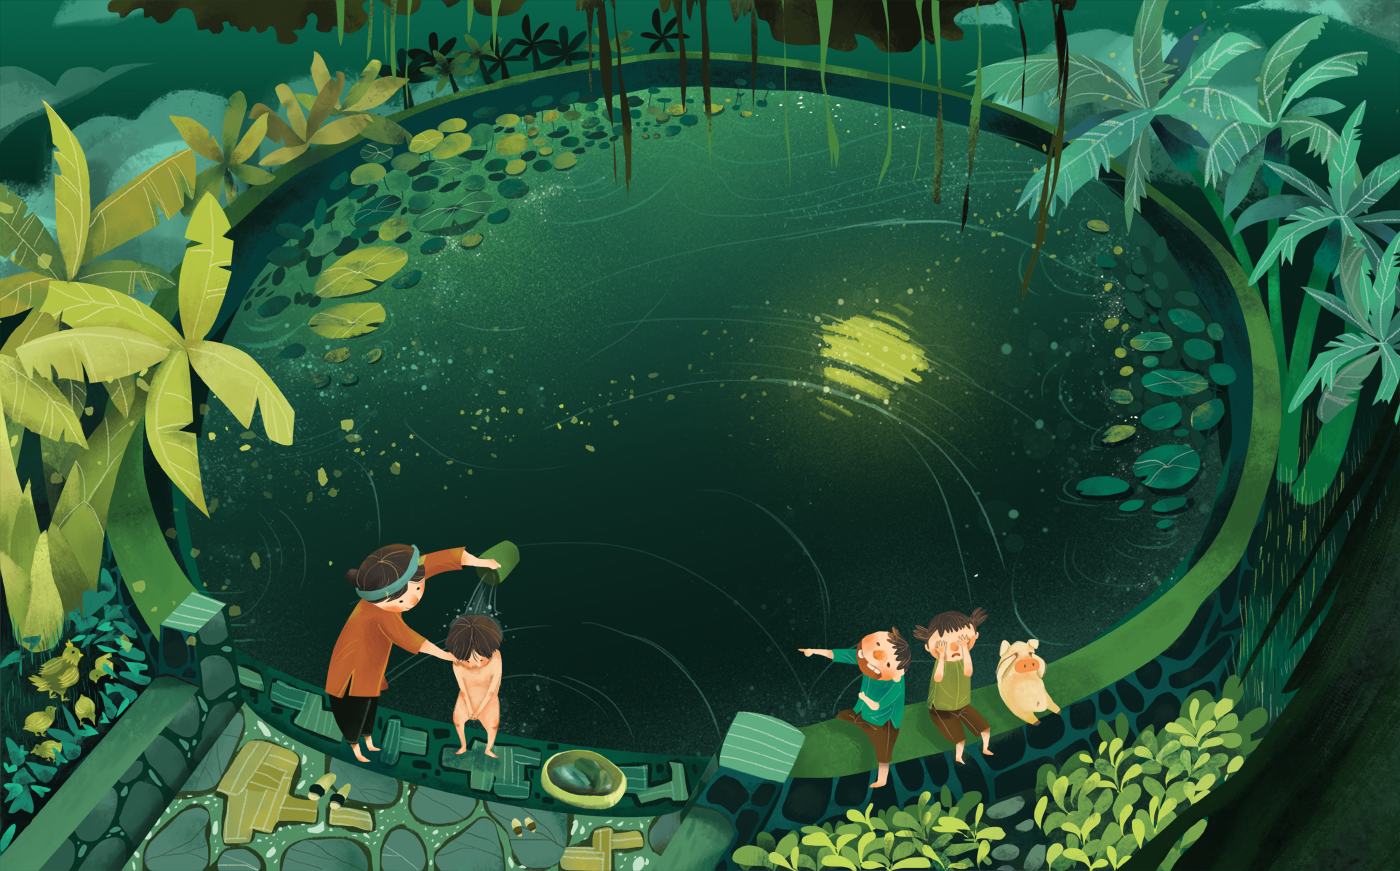 Picture book vietnam childhood poem vuon illustration Digital Art  AdobeSketch adobedraw inspire children book